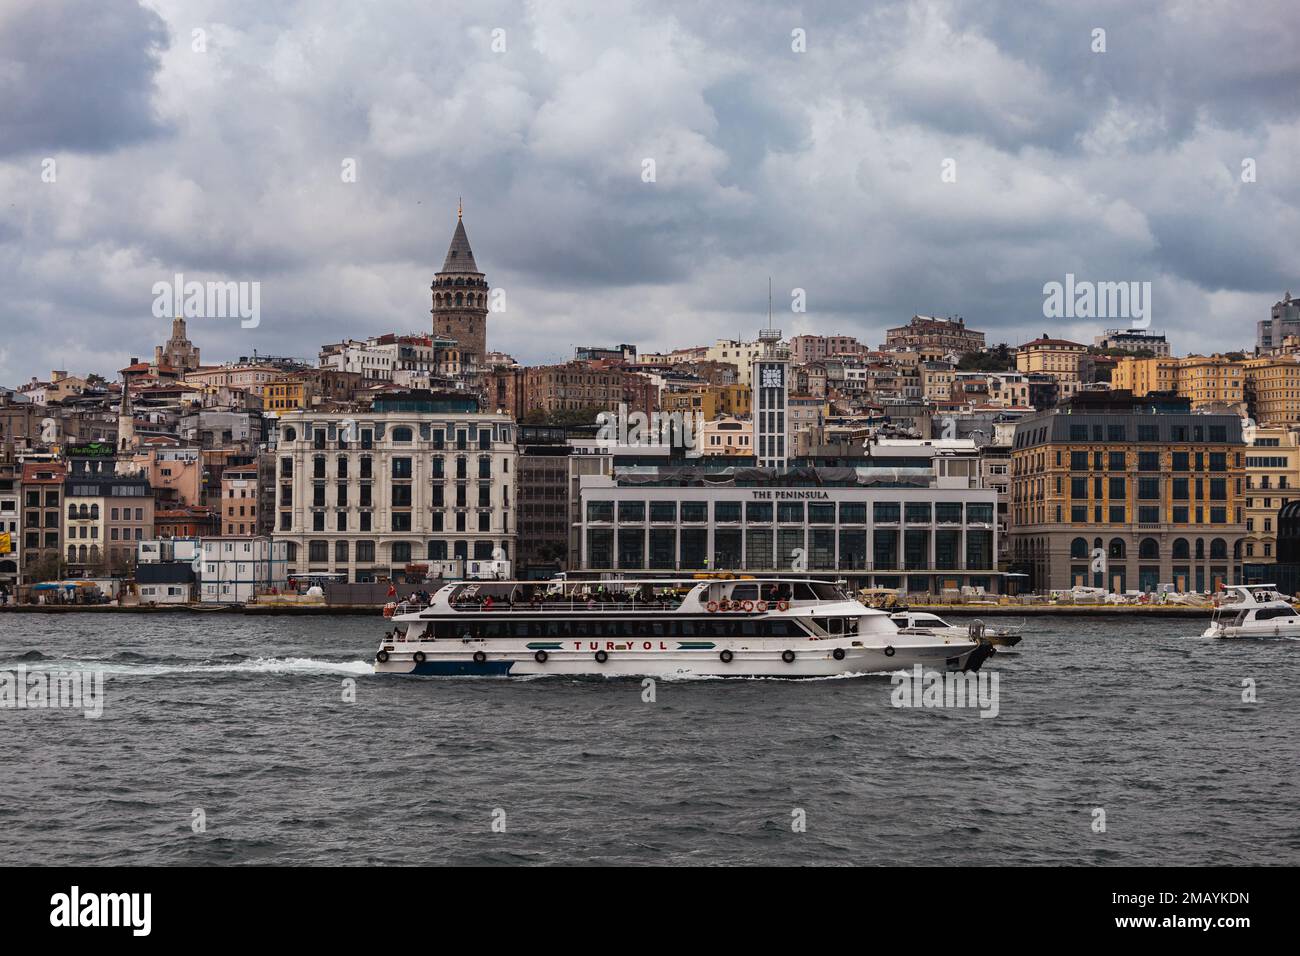 Paysage urbain d'Istanbul. Vieille ville avec des bâtiments colorés. Les quais du ferry d'Eminonu donnent sur l'embouchure de la Corne d'Or. Vue de l'eau Banque D'Images